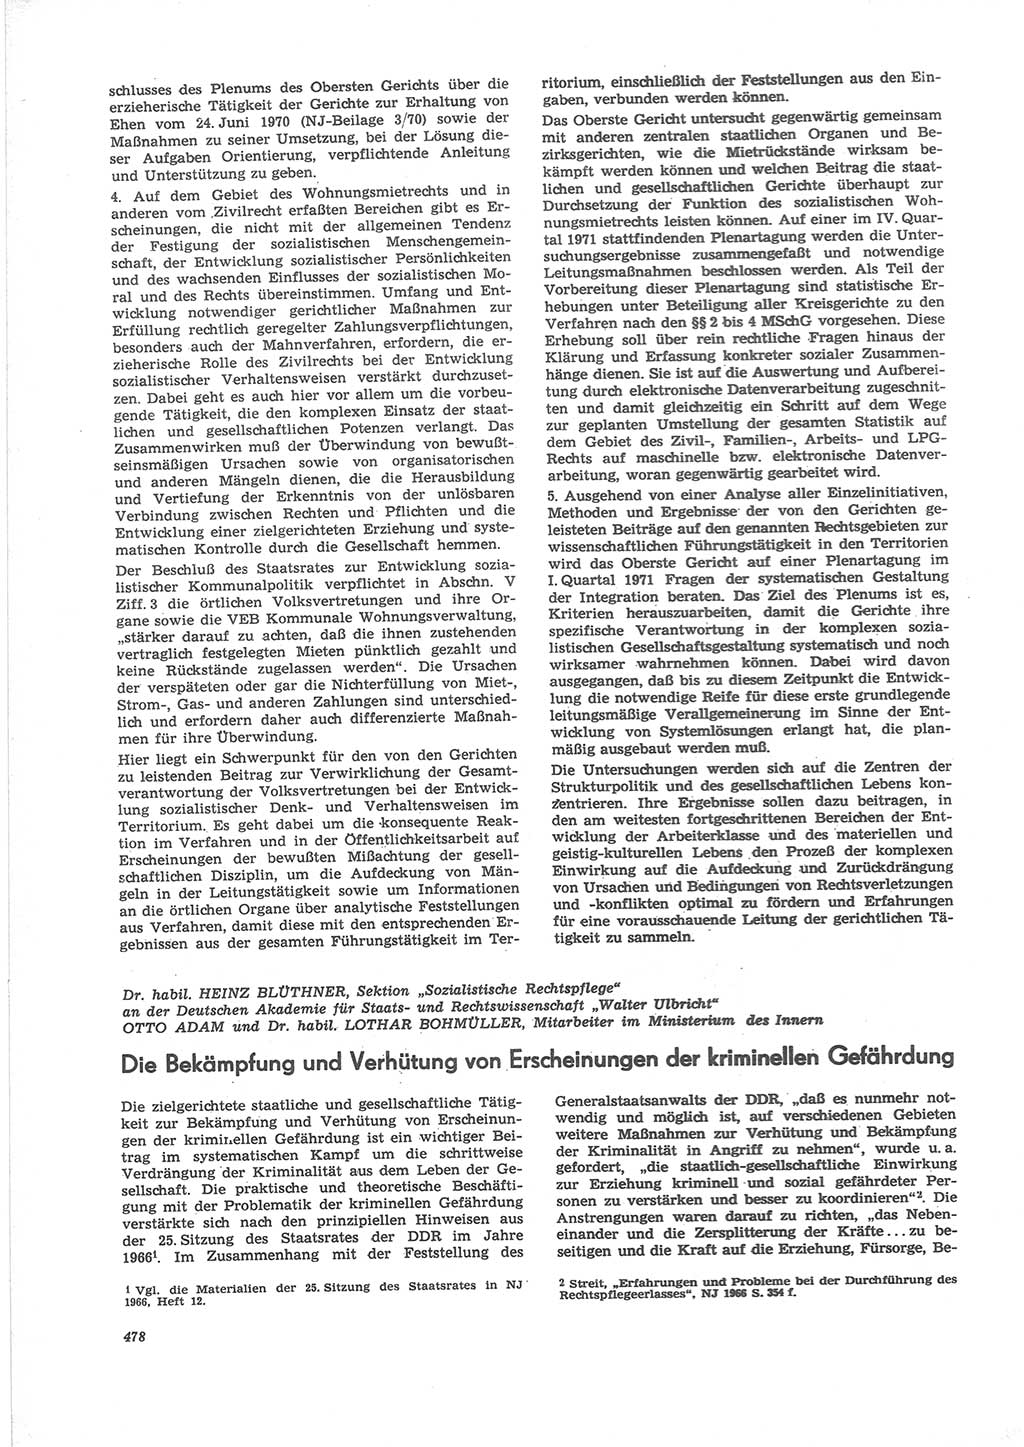 Neue Justiz (NJ), Zeitschrift für Recht und Rechtswissenschaft [Deutsche Demokratische Republik (DDR)], 24. Jahrgang 1970, Seite 478 (NJ DDR 1970, S. 478)